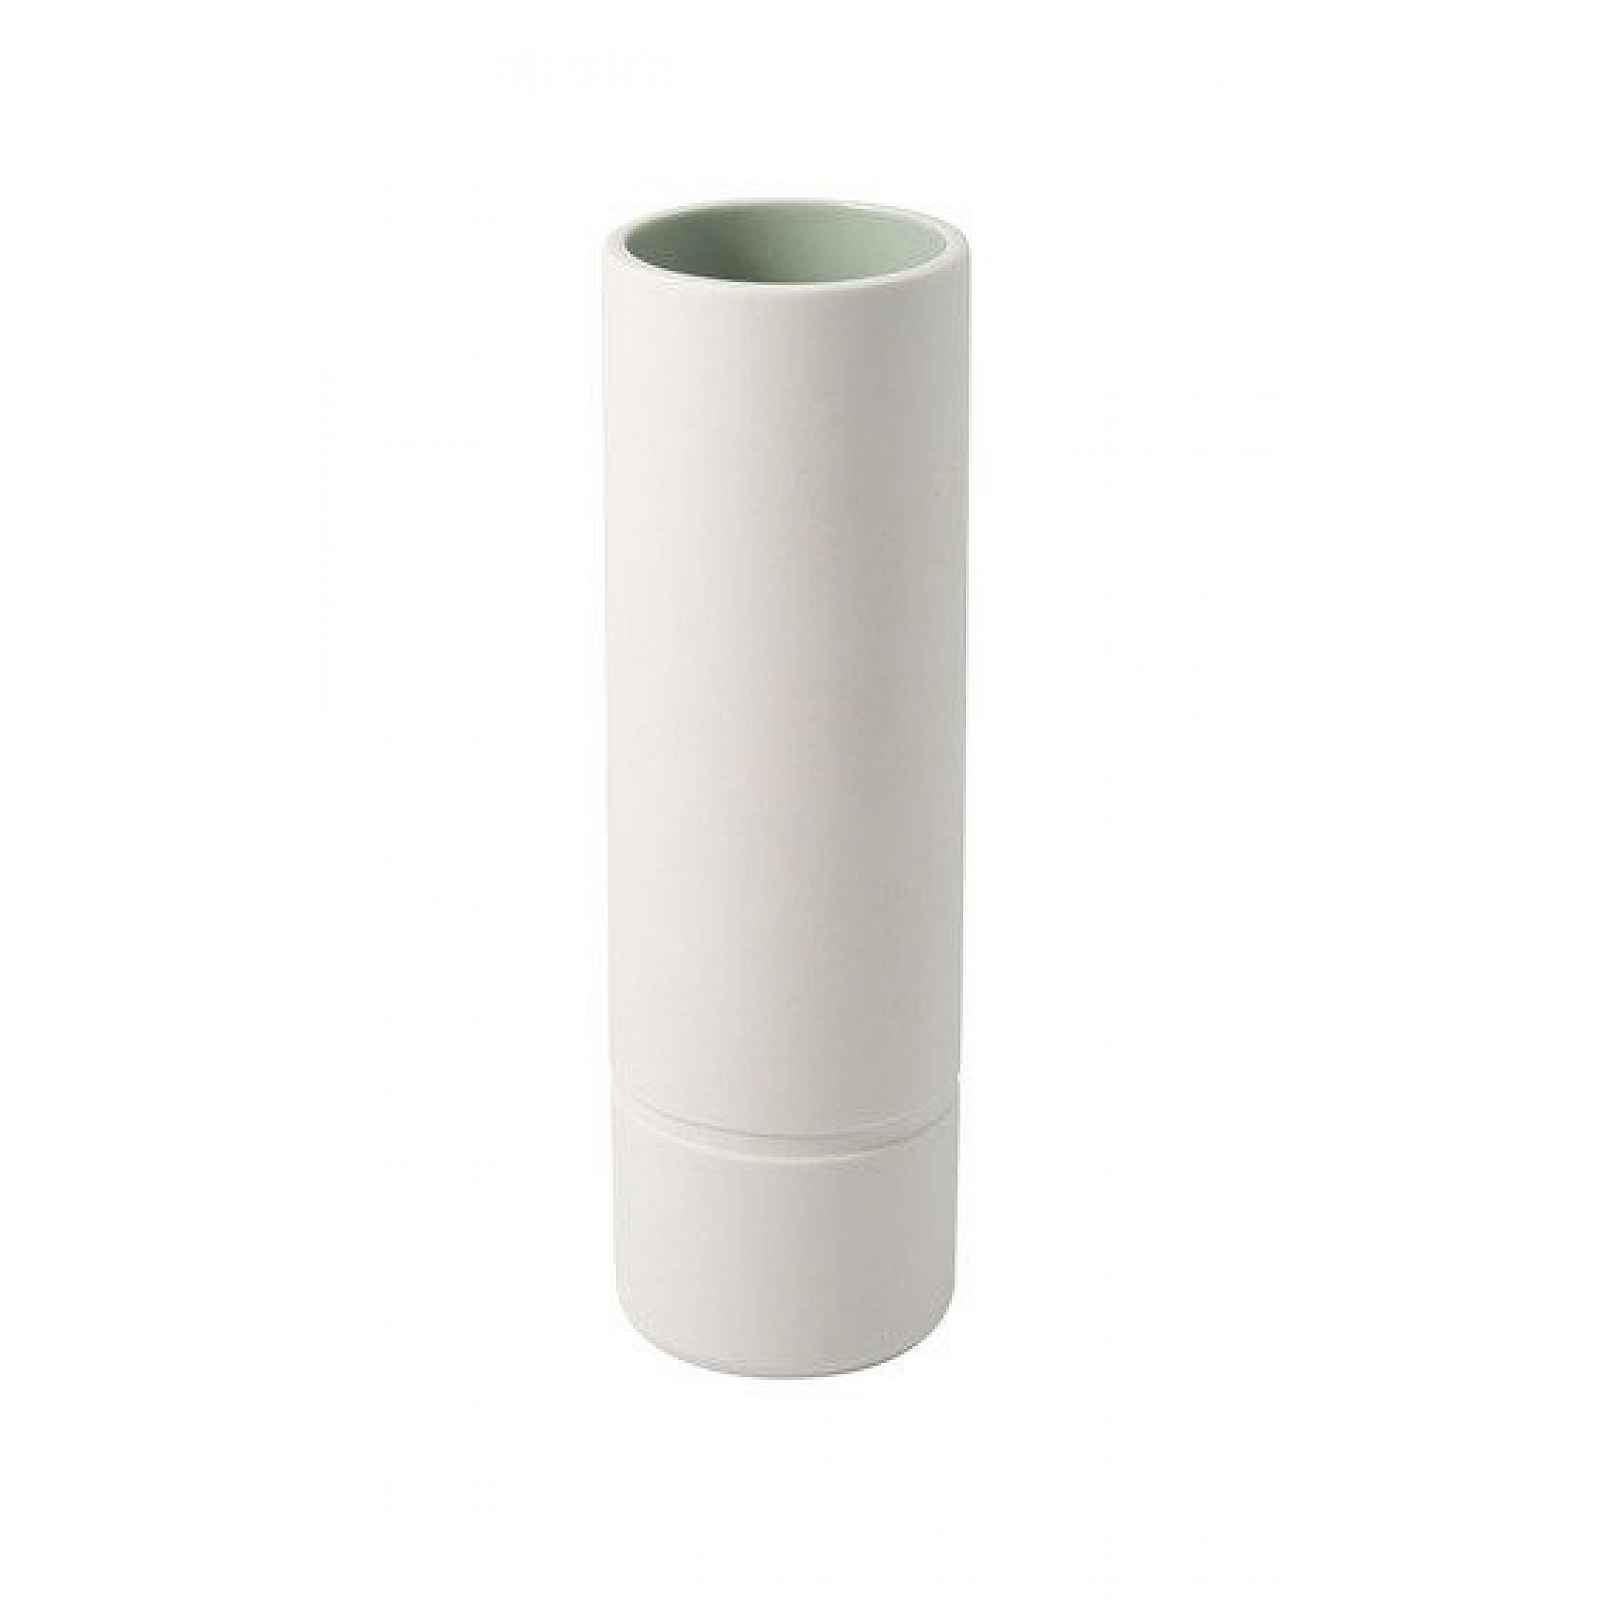 Villeroy & Boch it’s my home porcelánová váza, 20 cm